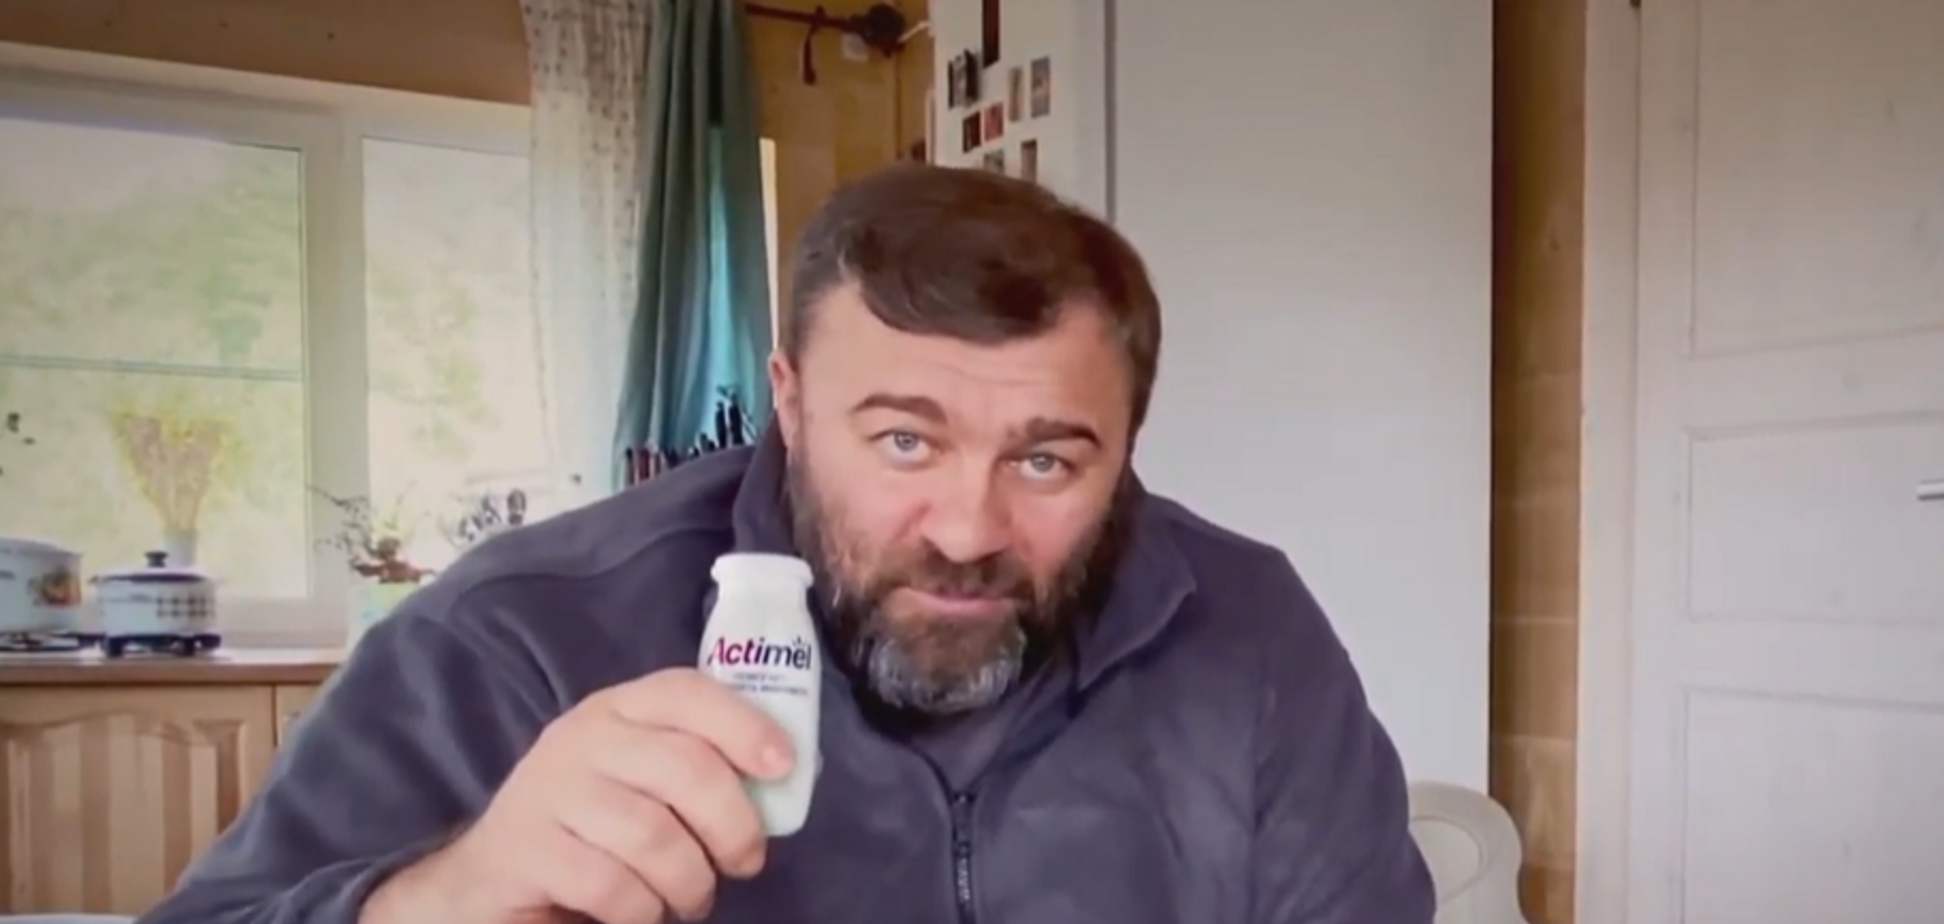 Компания Danone сняла рекламу со стрелявшим по ВСУ на Донбассе актером Пореченковым. Видео